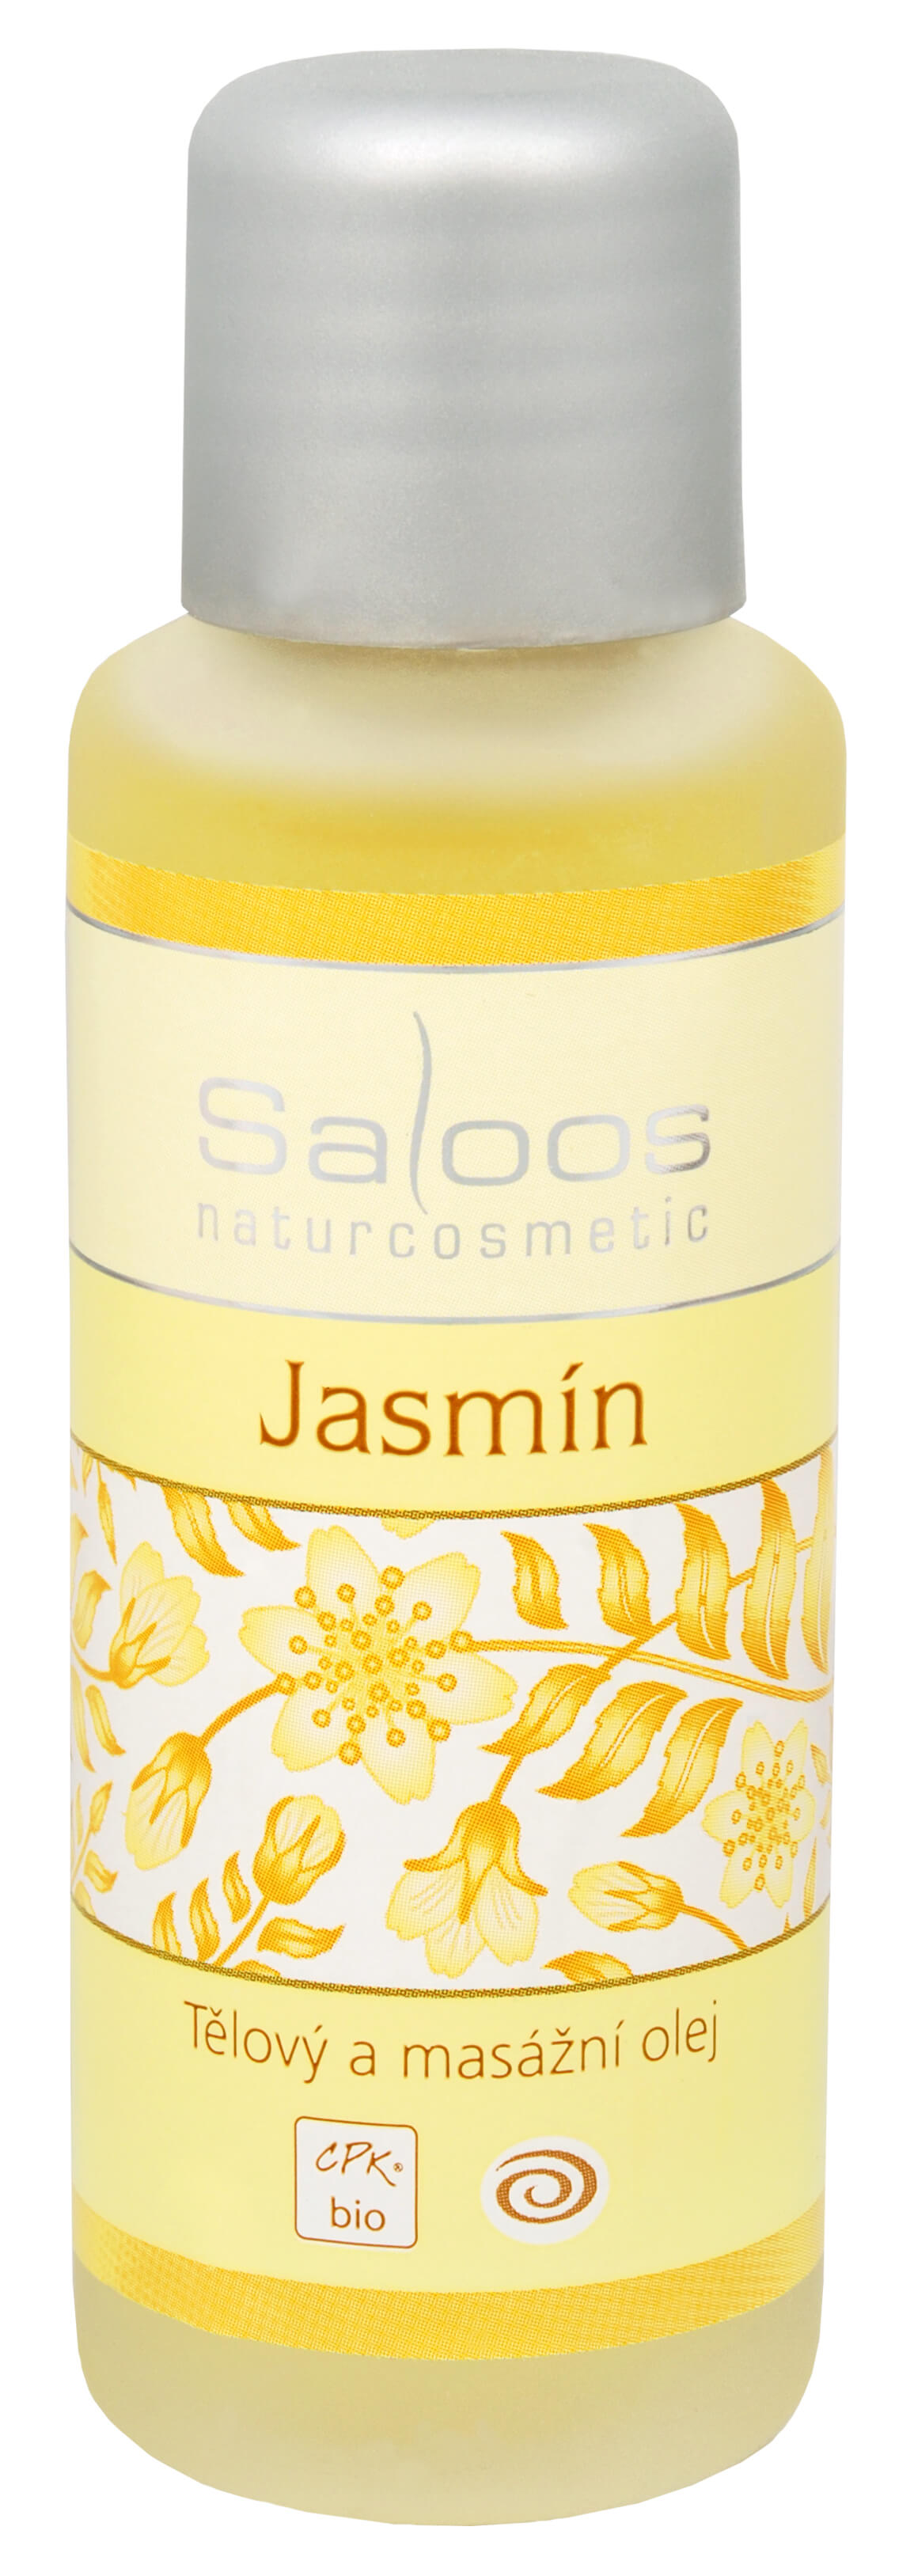 Zobrazit detail výrobku Saloos Bio tělový a masážní olej - Jasmín 50 ml